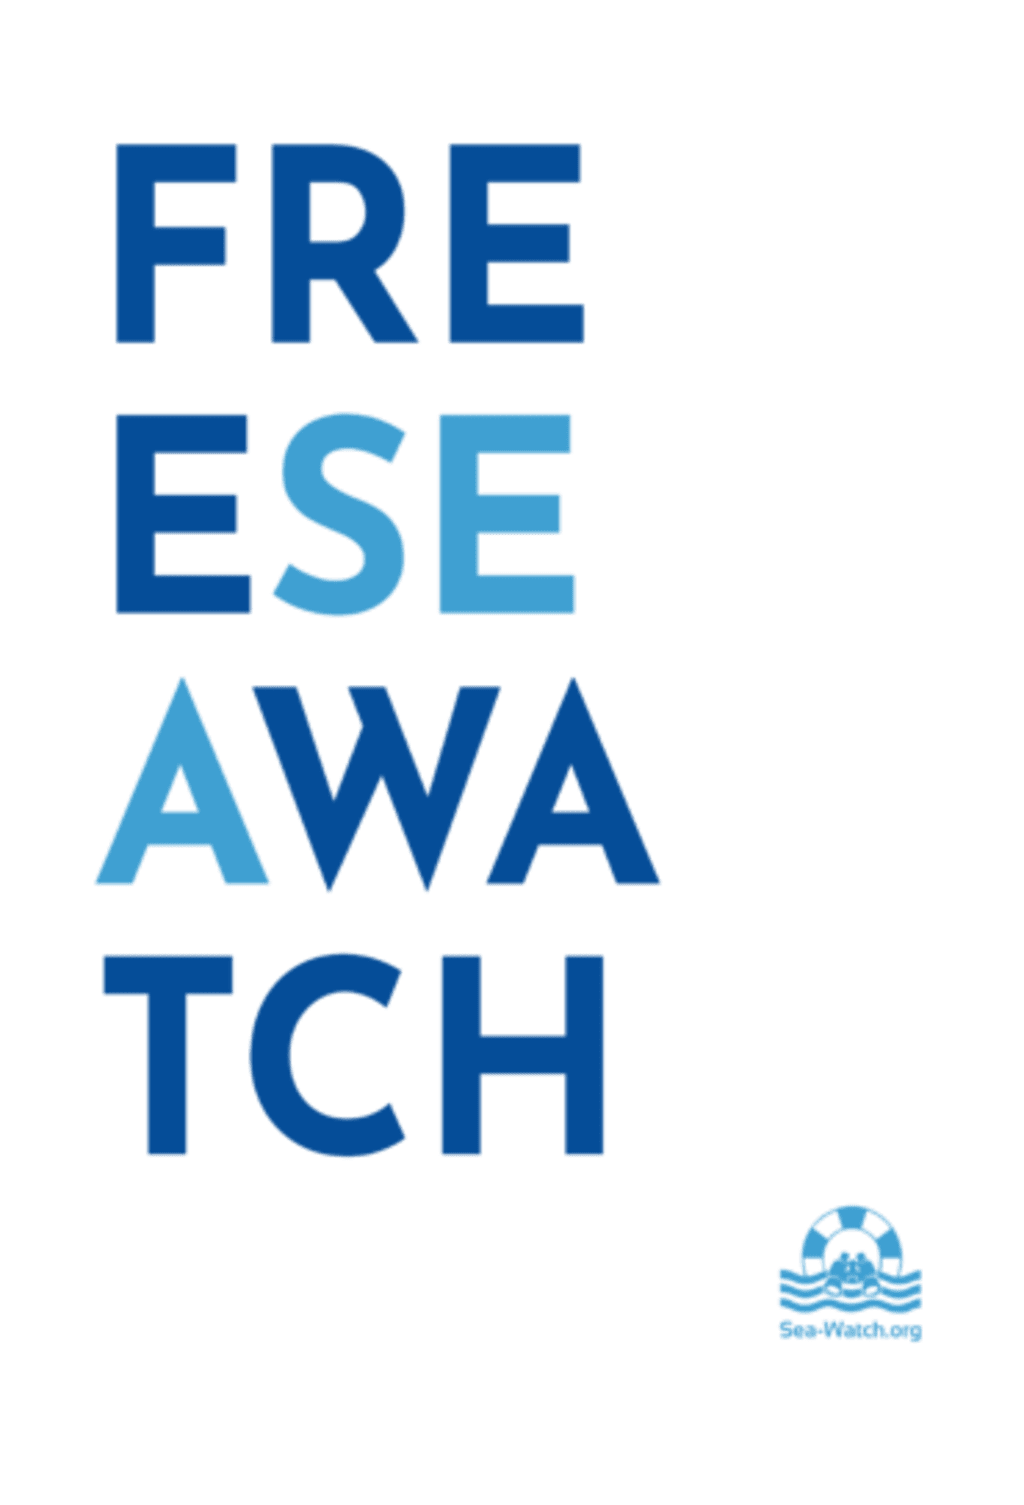 Liberate Sea-Watch - scritta blu